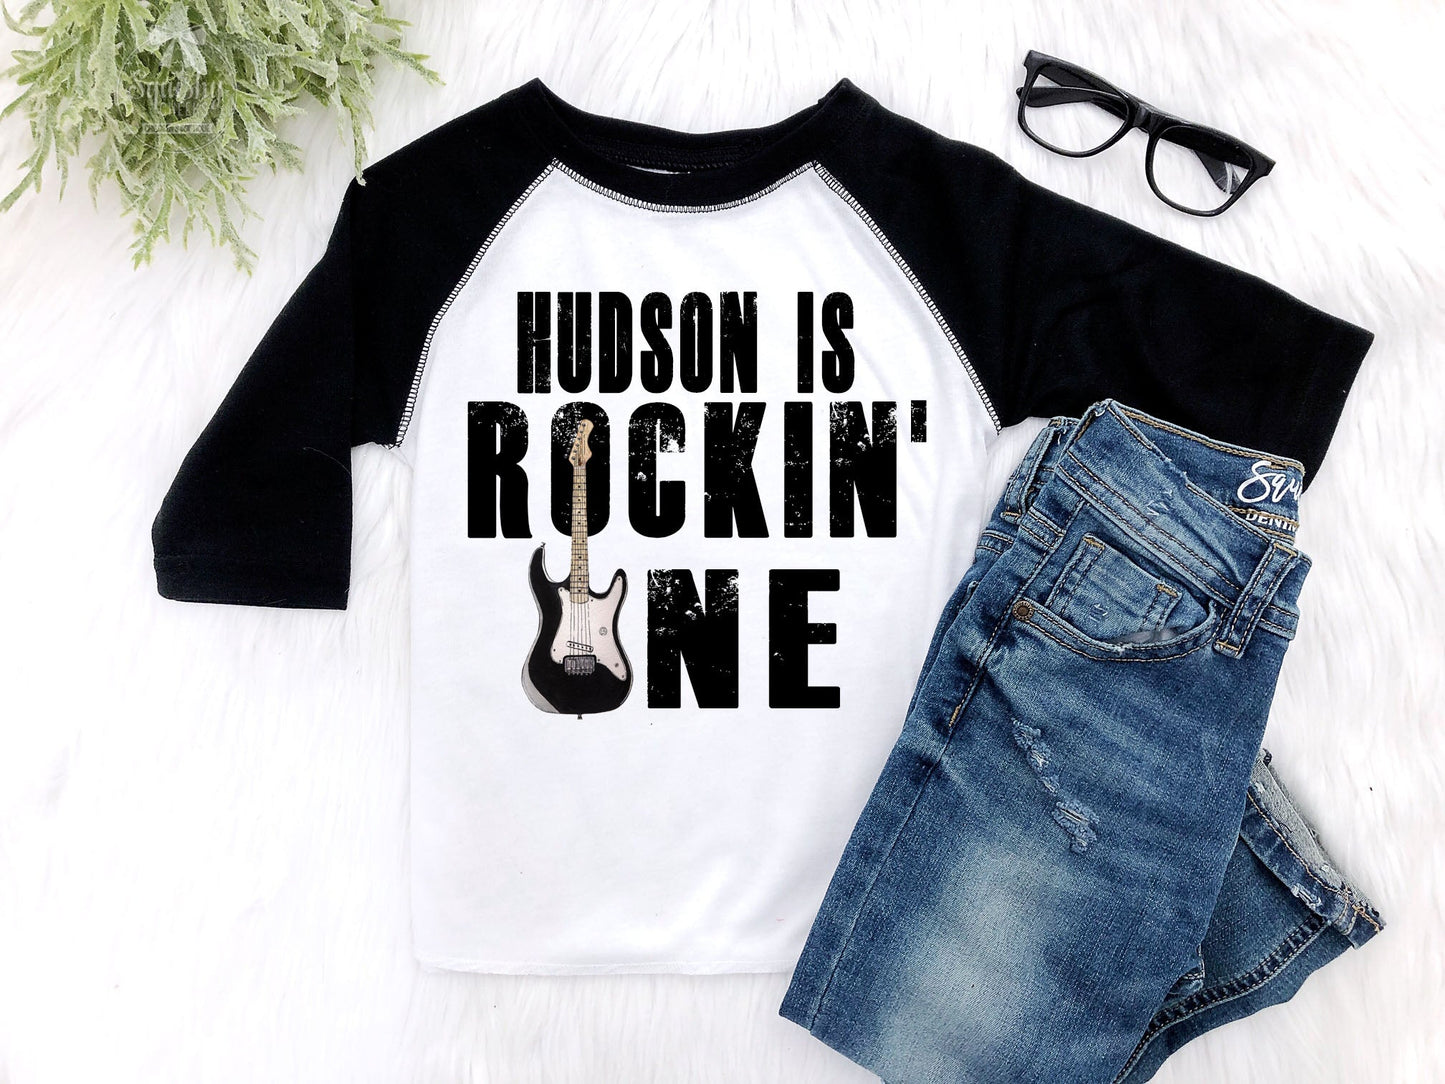 Rockin' Mom Matching Birthday Shirt - Squishy Cheeks